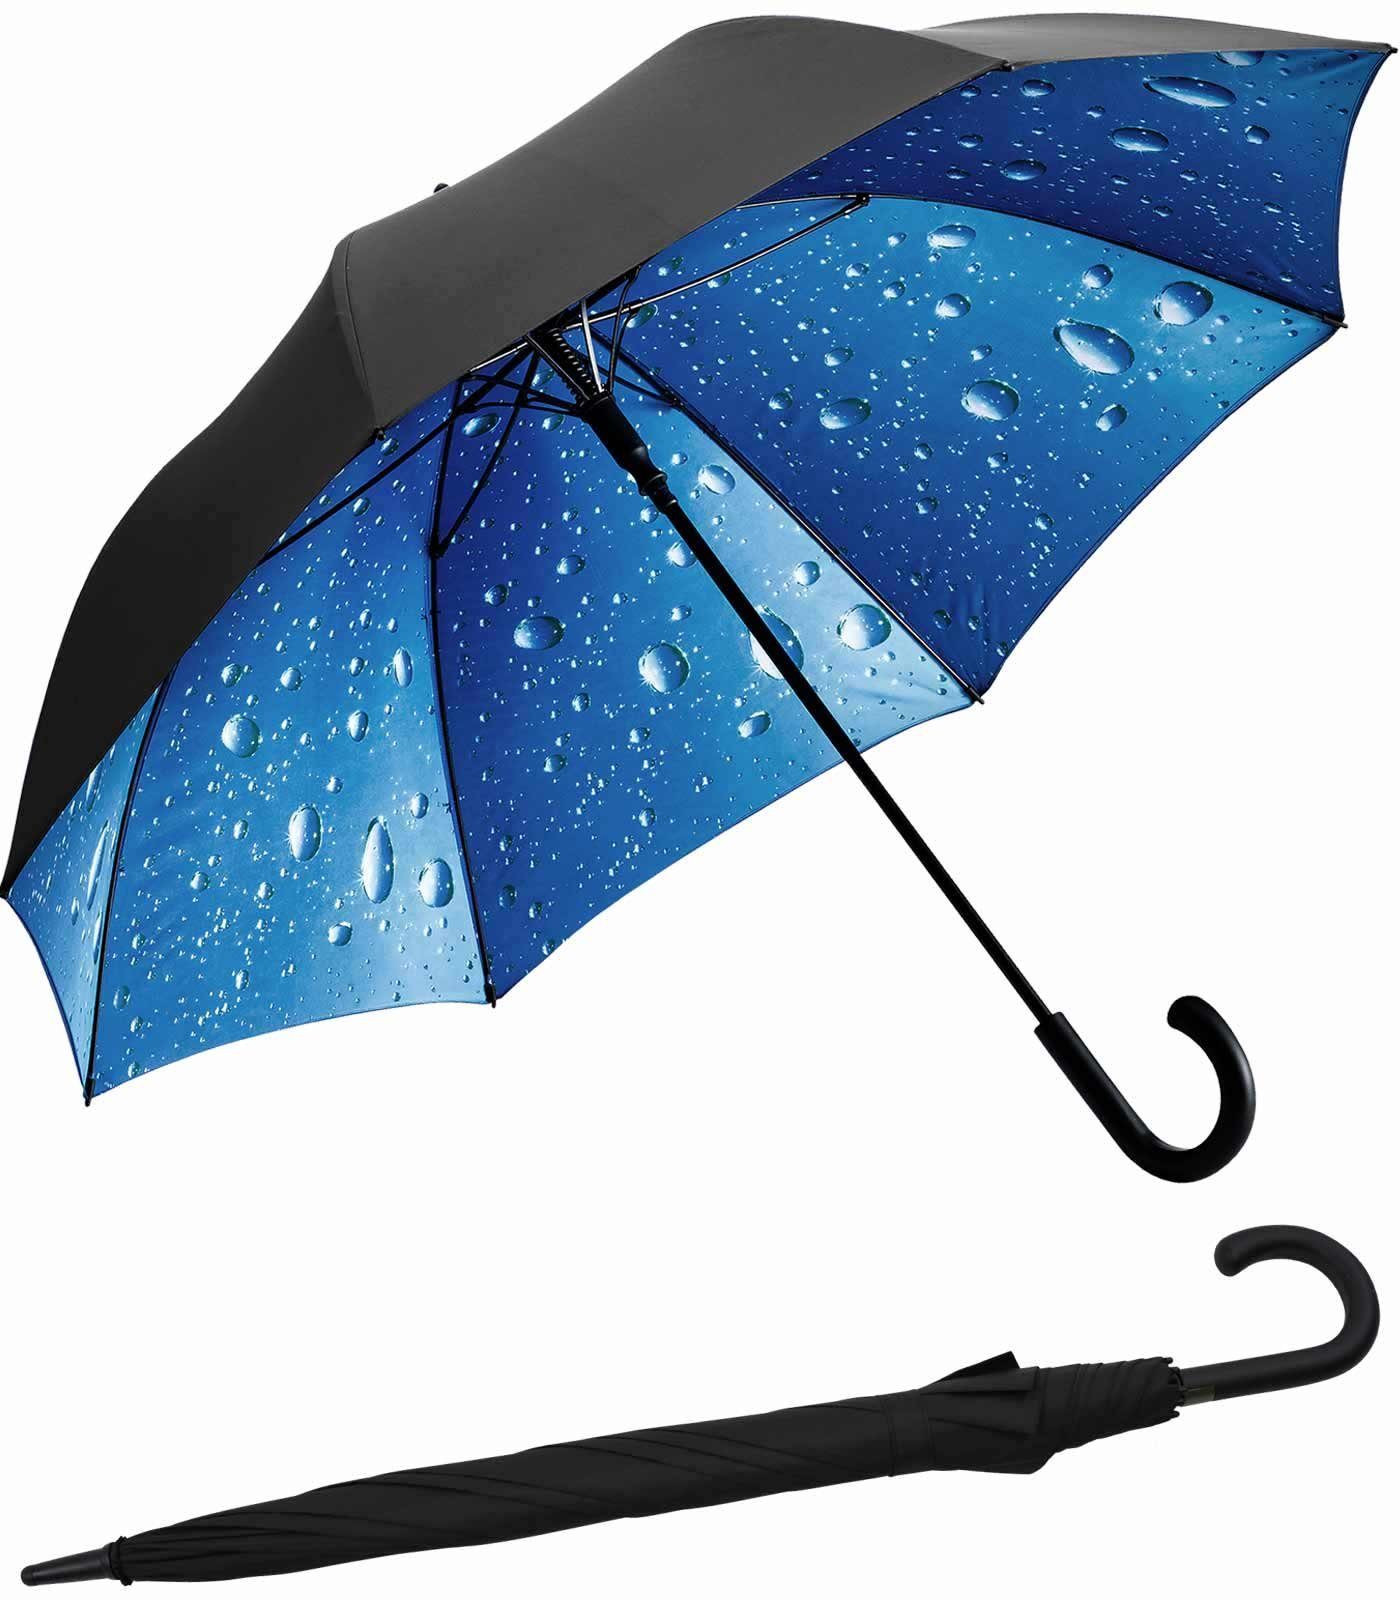 Impliva Langregenschirm Falcone® mit Automatik - innen bedruckter Himmel, das Motiv ist nur von innen sichtbar Regen-schwarz